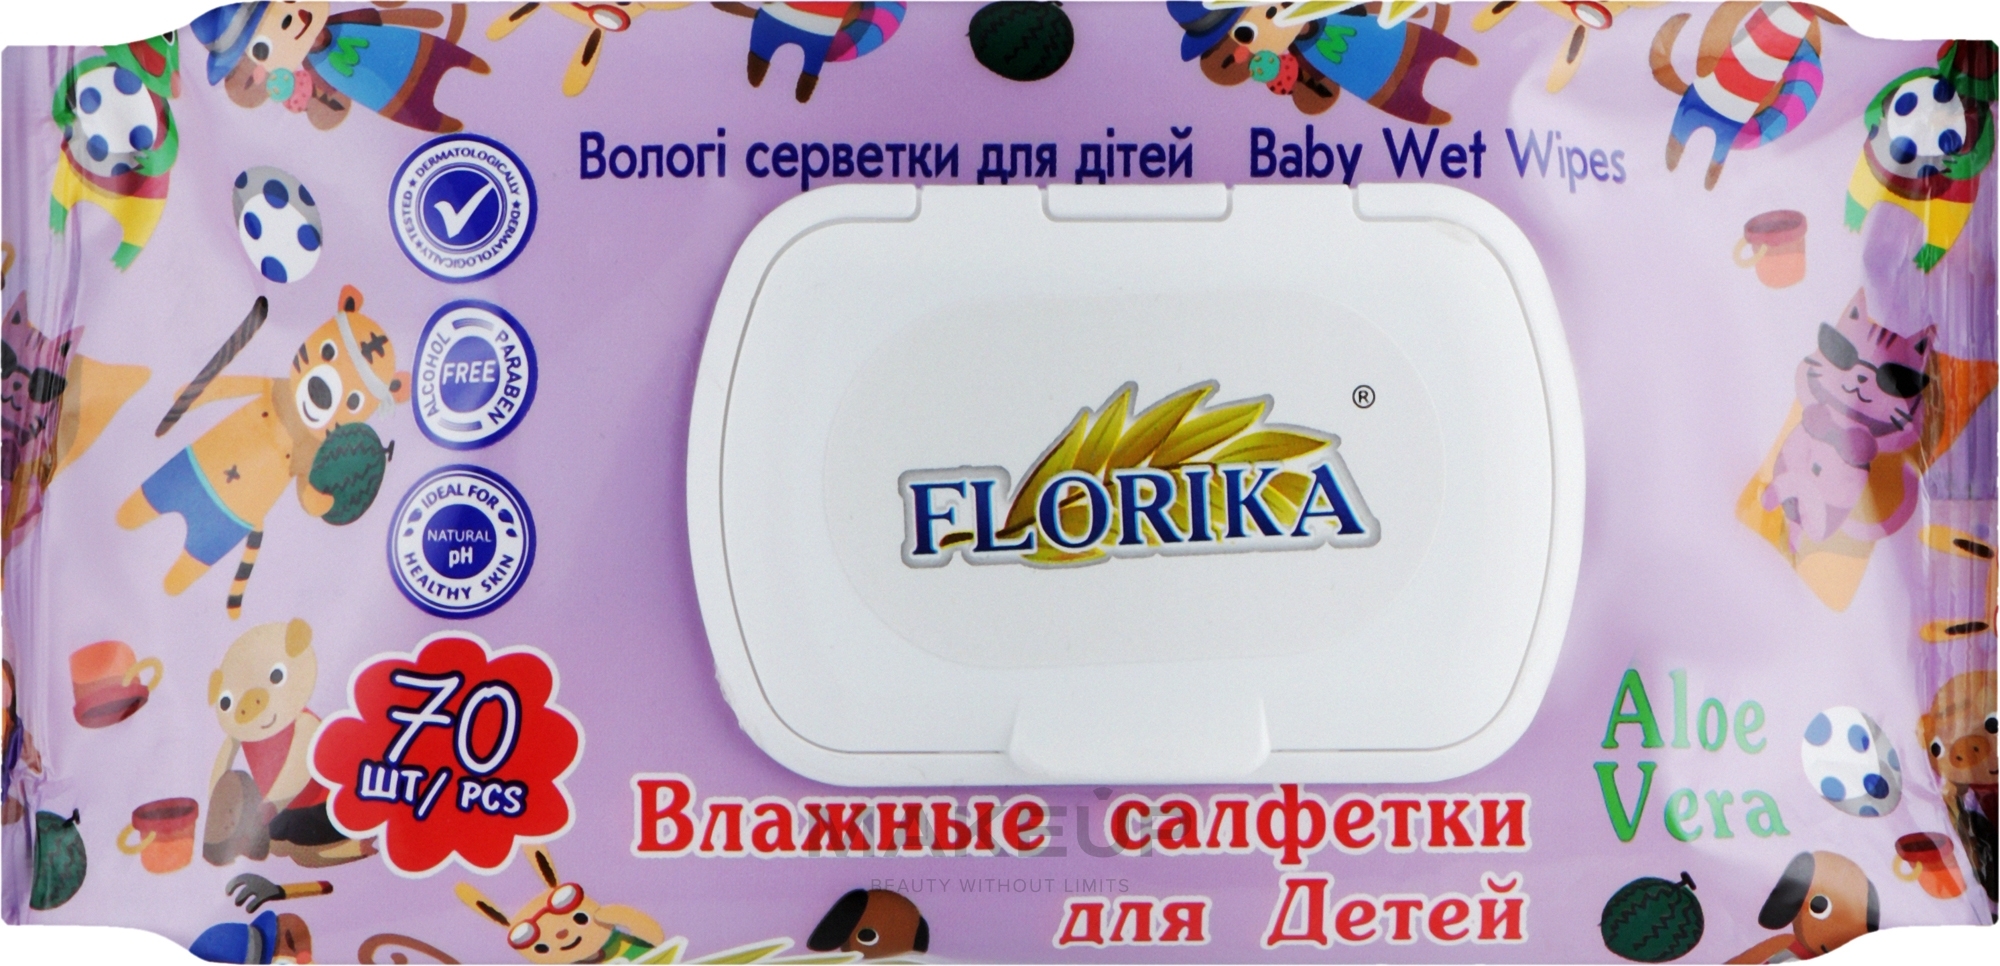 Вологі серветки для дітей "Алое вера" - Florika Baby Wet Wipes Aloe Vera — фото 70шт